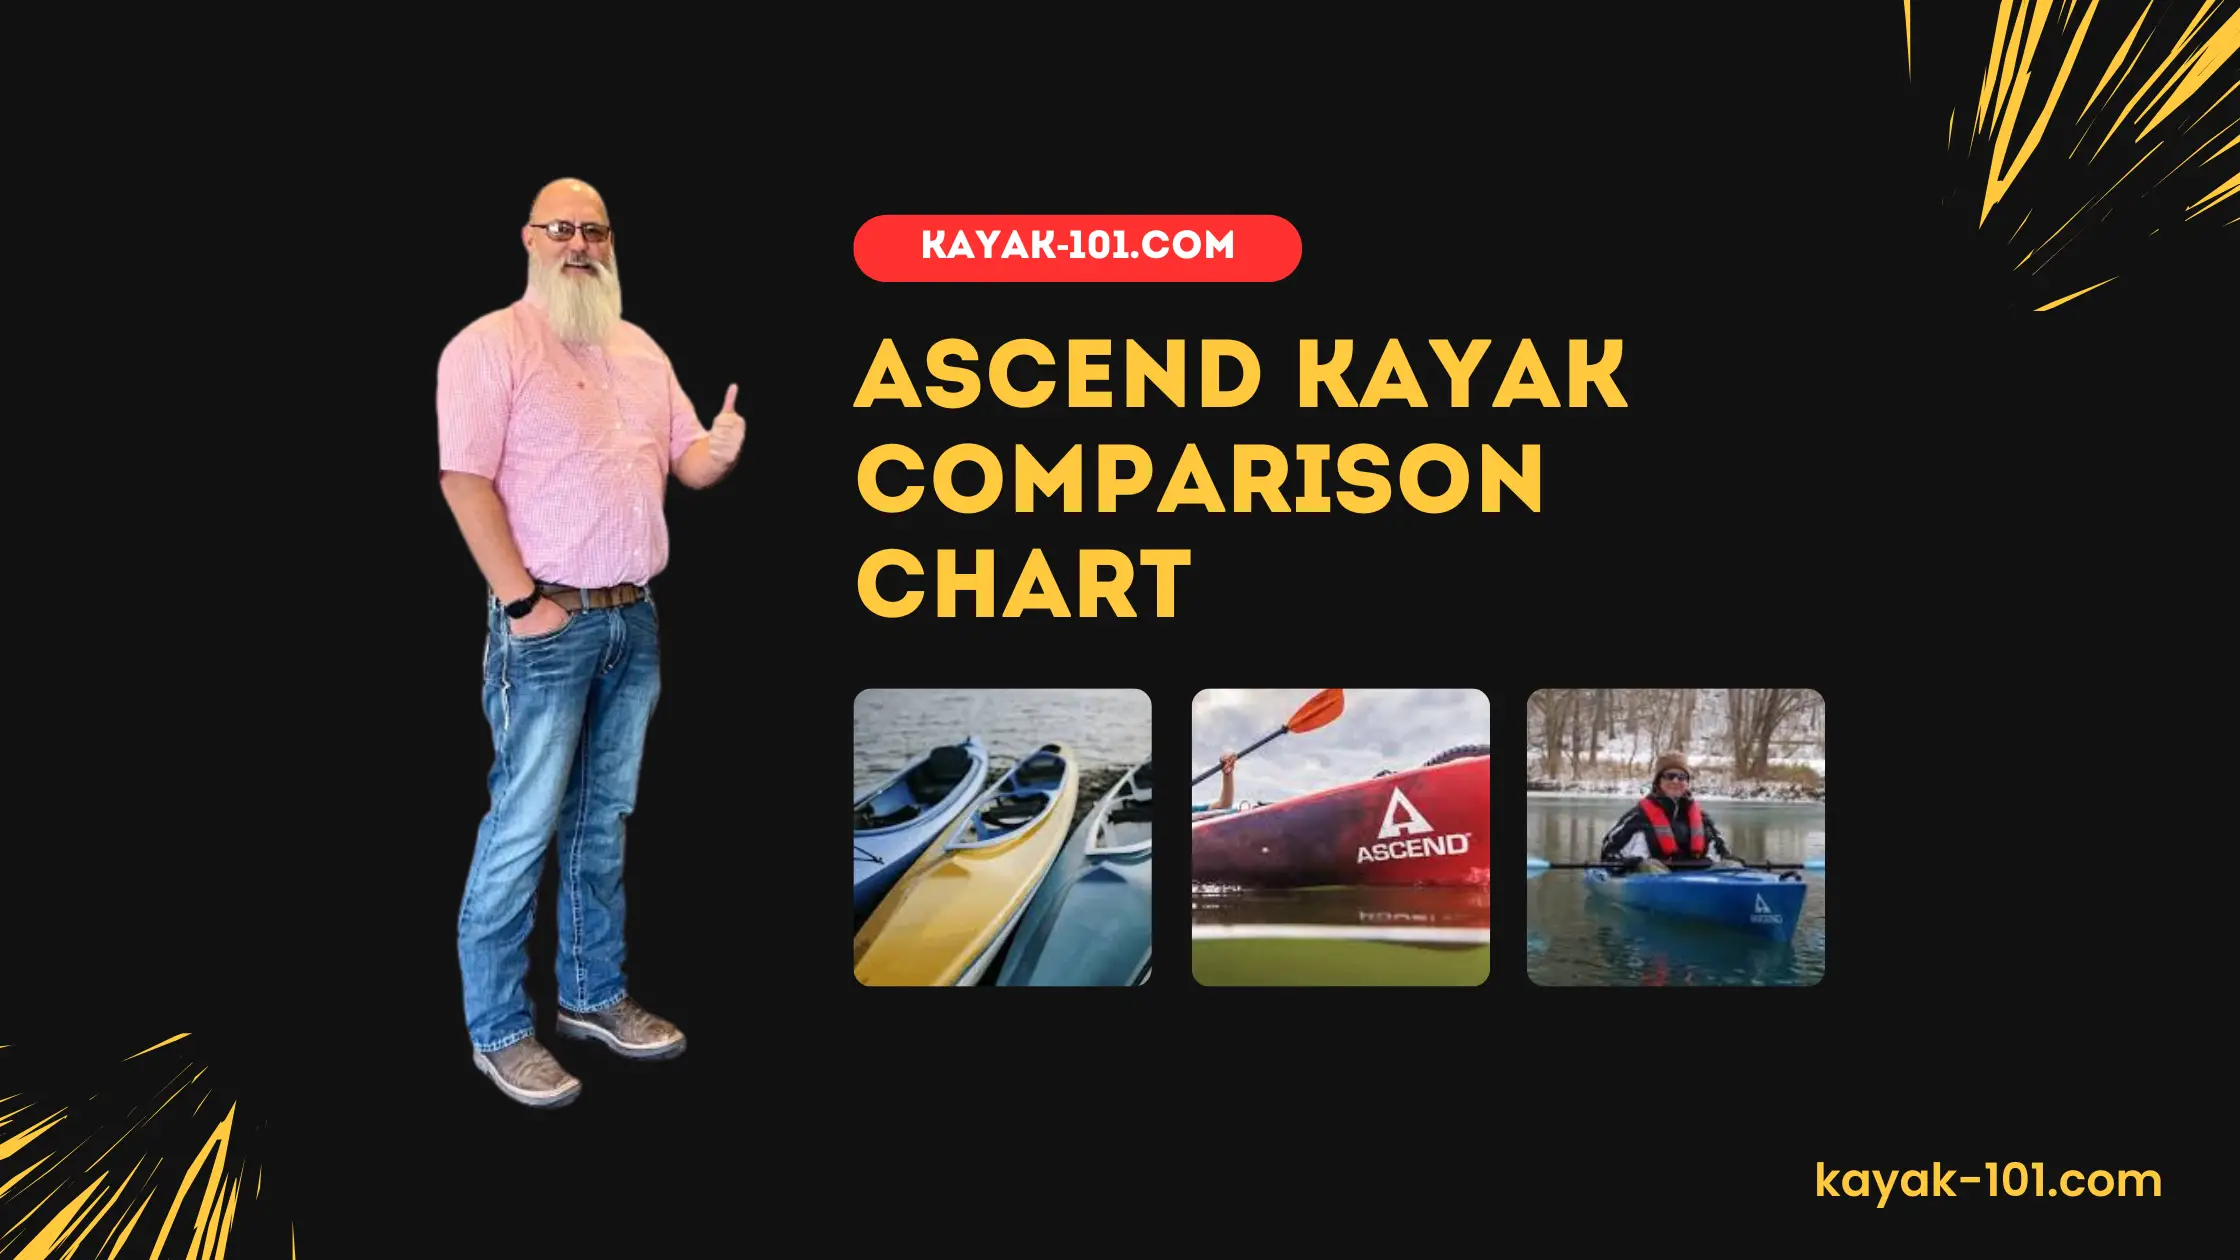 Ascend kayak comparison chart